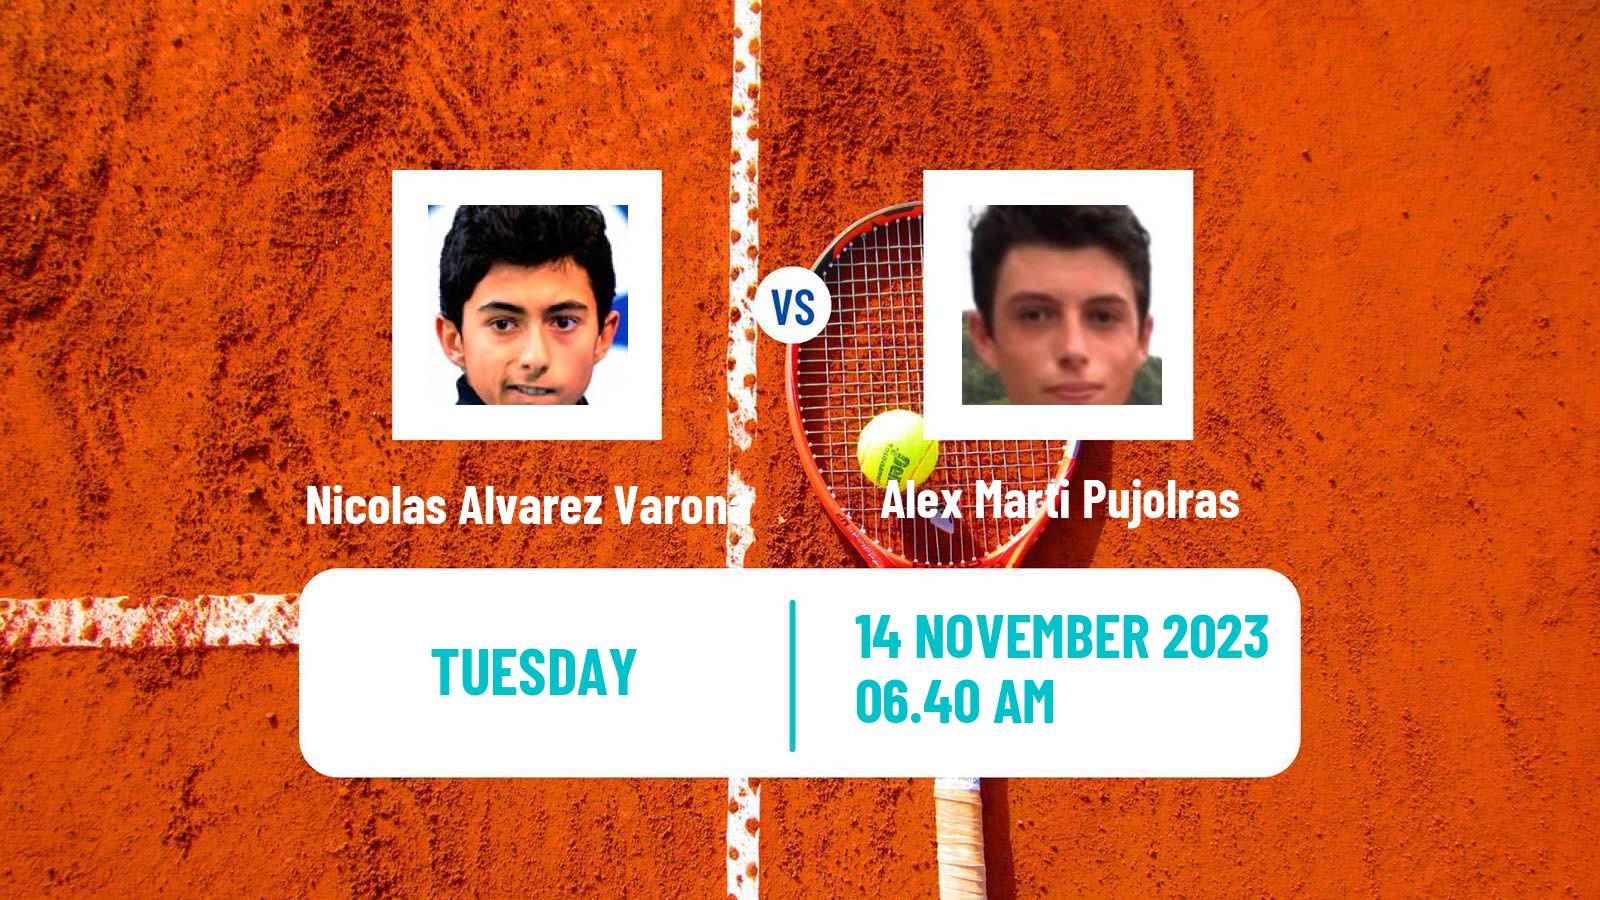 Tennis ITF M15 Valencia Men Nicolas Alvarez Varona - Alex Marti Pujolras